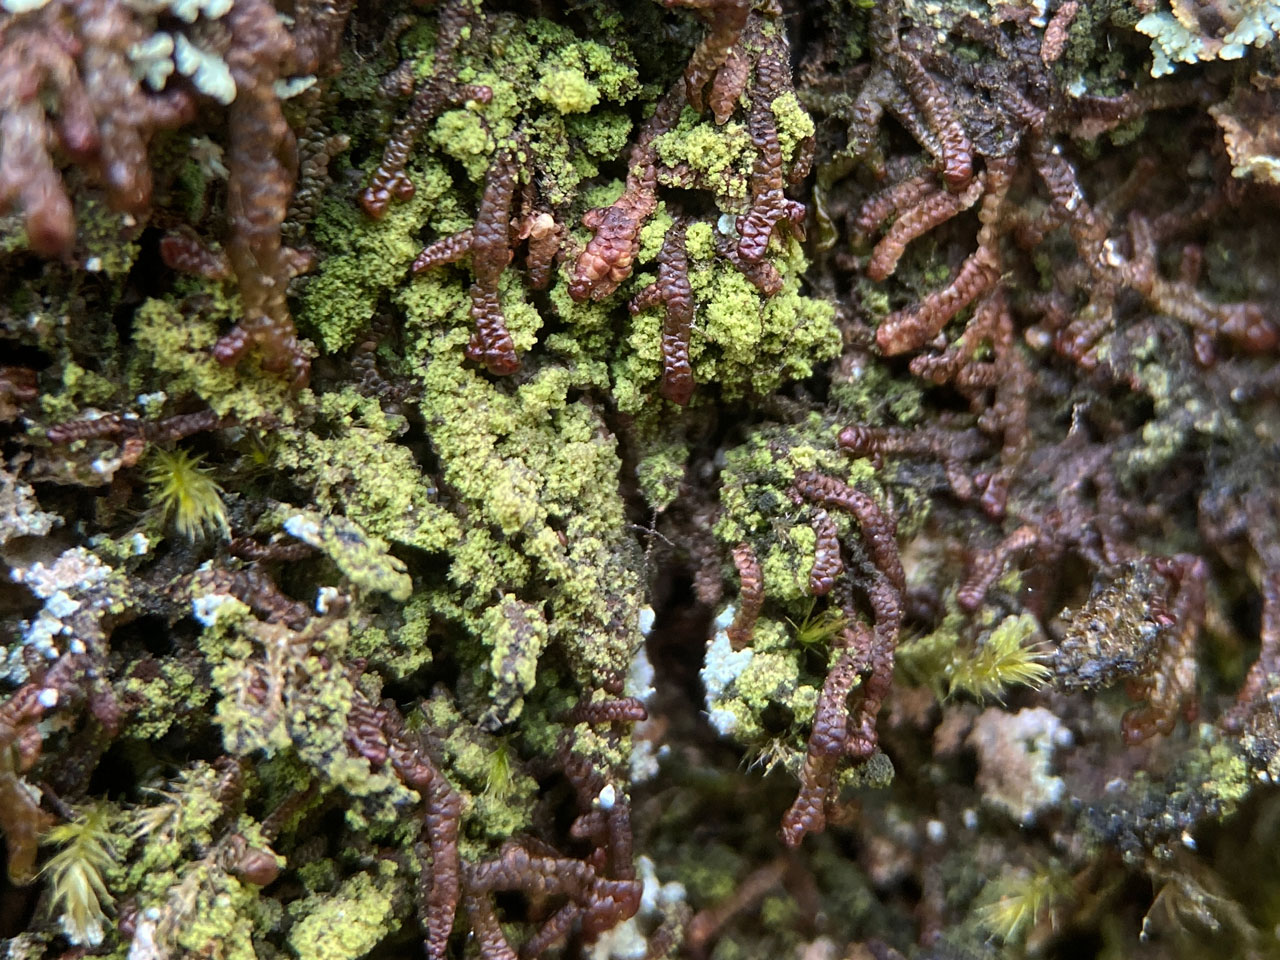 Bacidina celtica (Bacidina squamellosa), Oak, Rufus Stone, New Forest